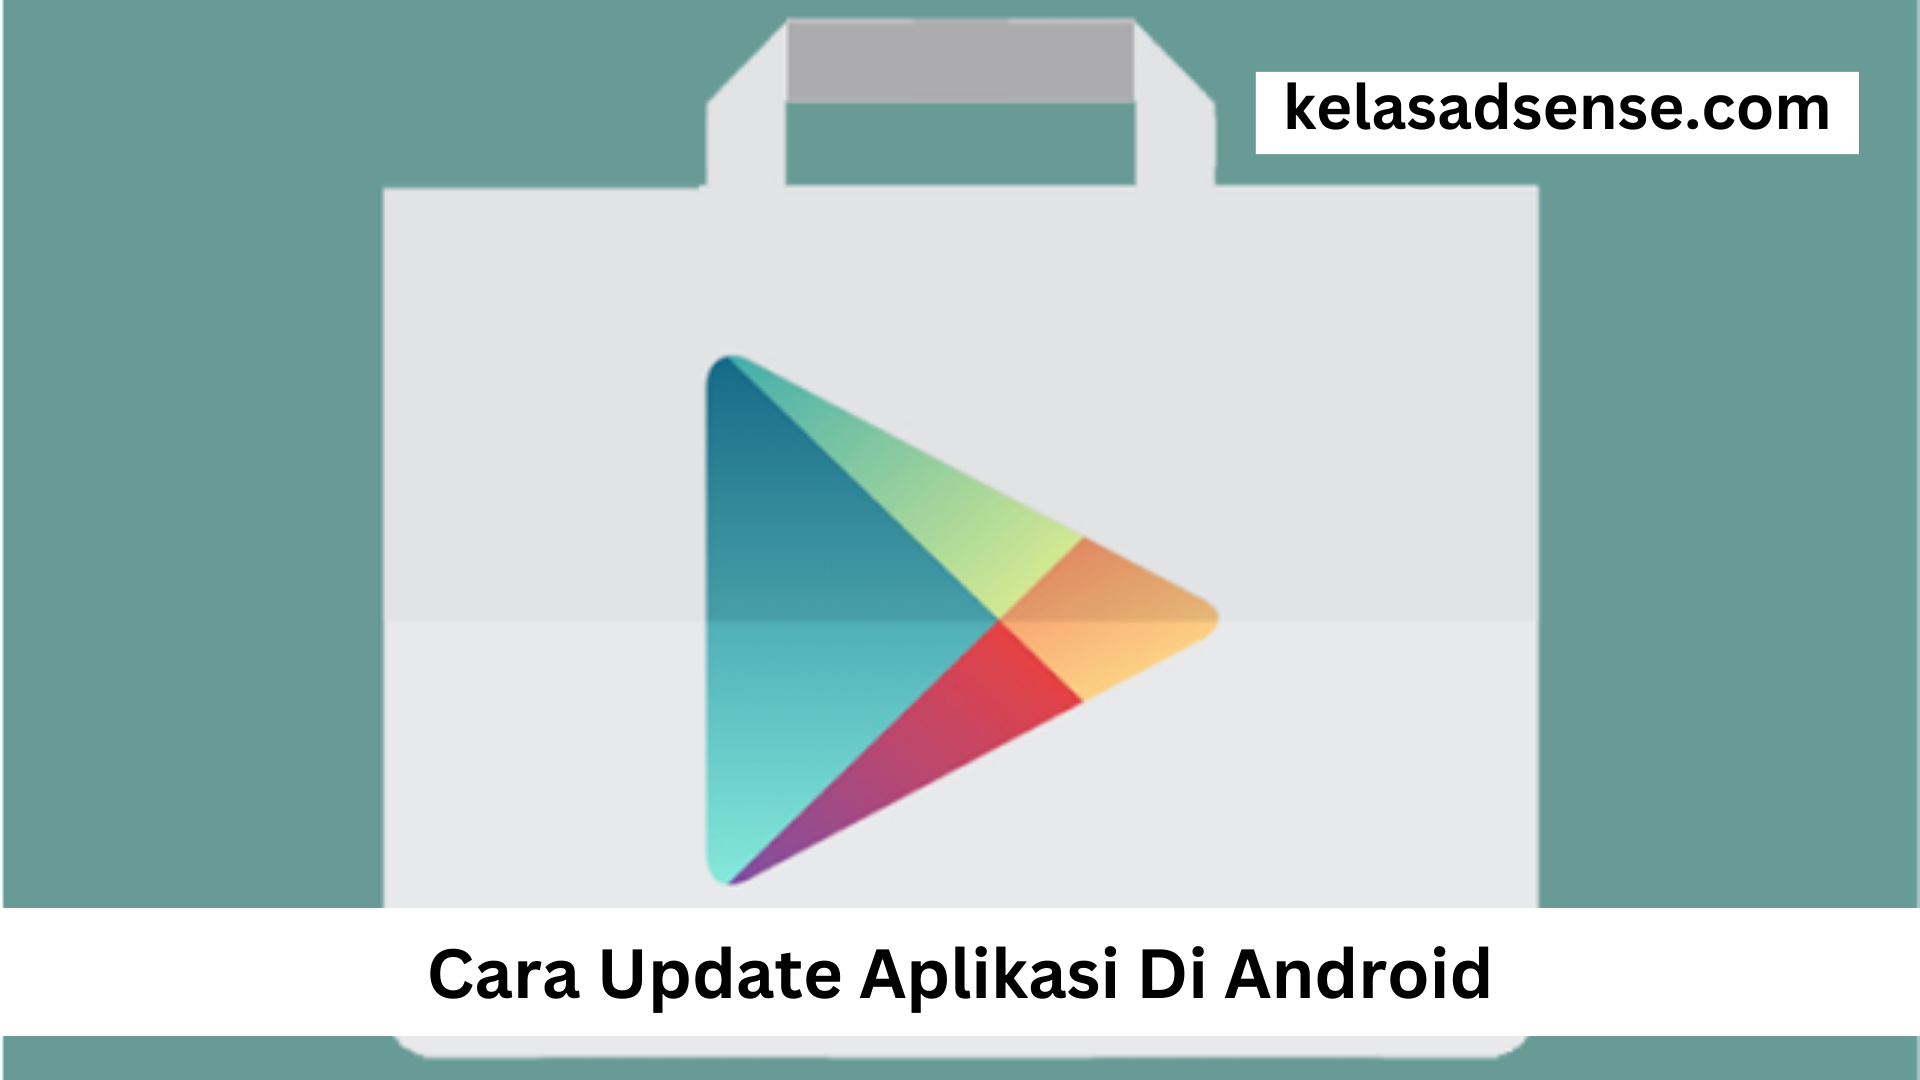 Cara Update Aplikasi Di Android